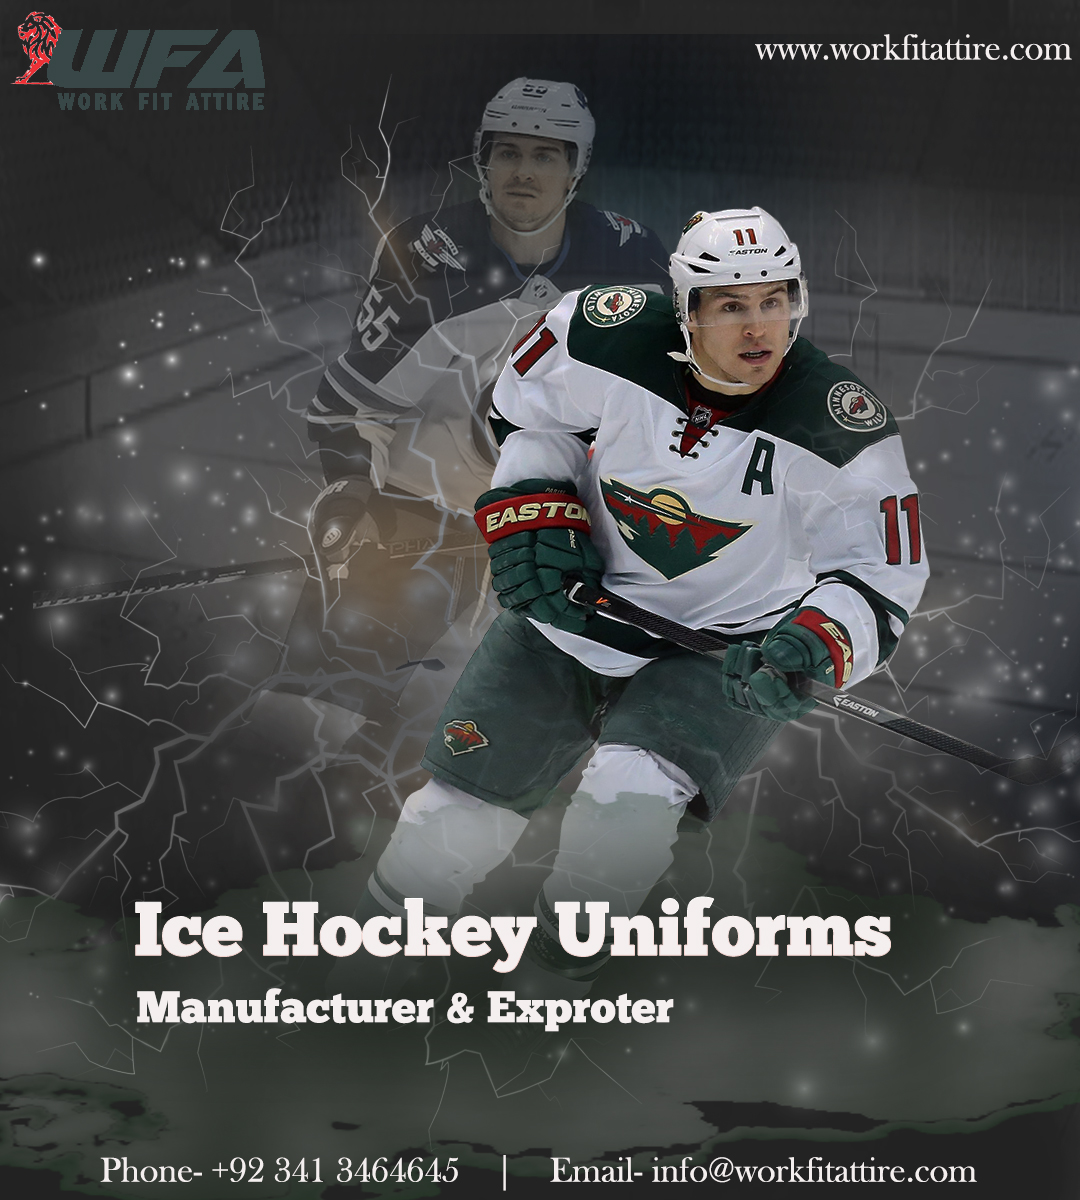 Ice Hockey Uniform Manufacturer & Exproter
workfitattire.com
#icehockeyuniformsupplier #icehockeyuniforms #icehockey #sportsuniforms #uniformsupplier #sialkotsportswear #sialkotsports #sialkot #sportswear #workfitattire